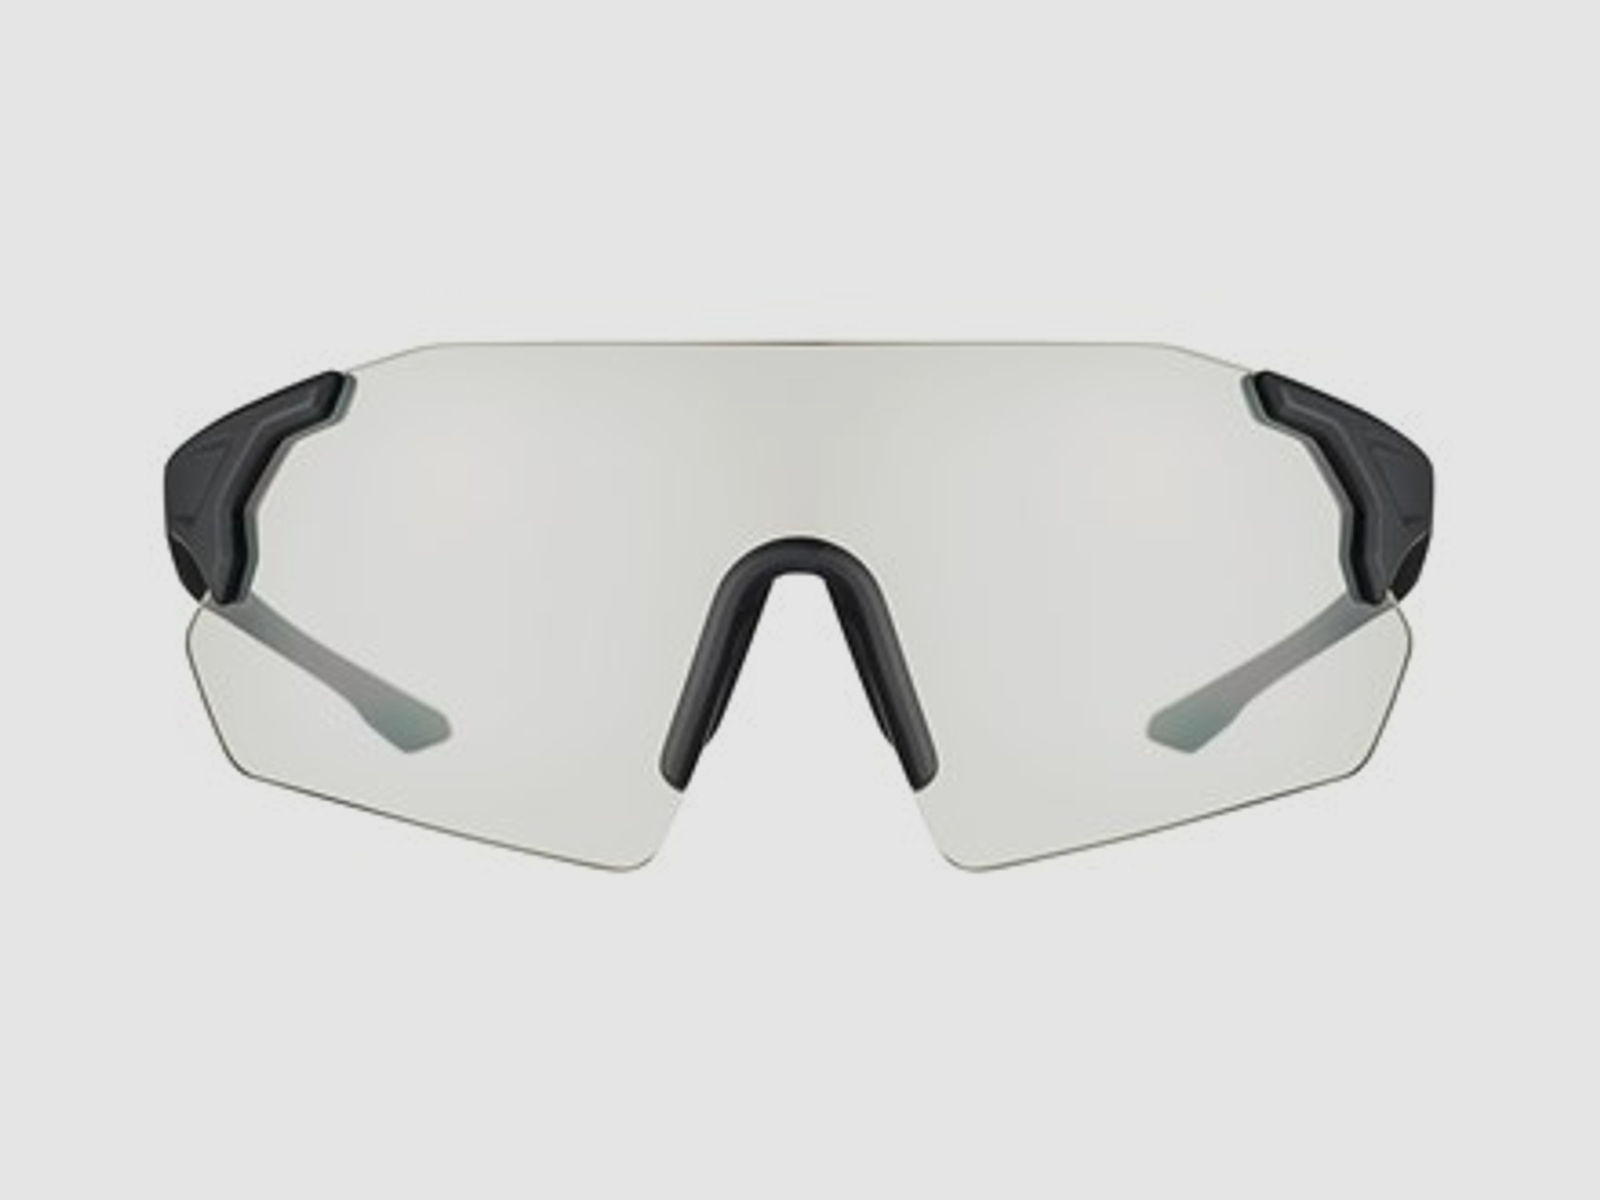 Beretta Schießbrille Challenge EVO neutral